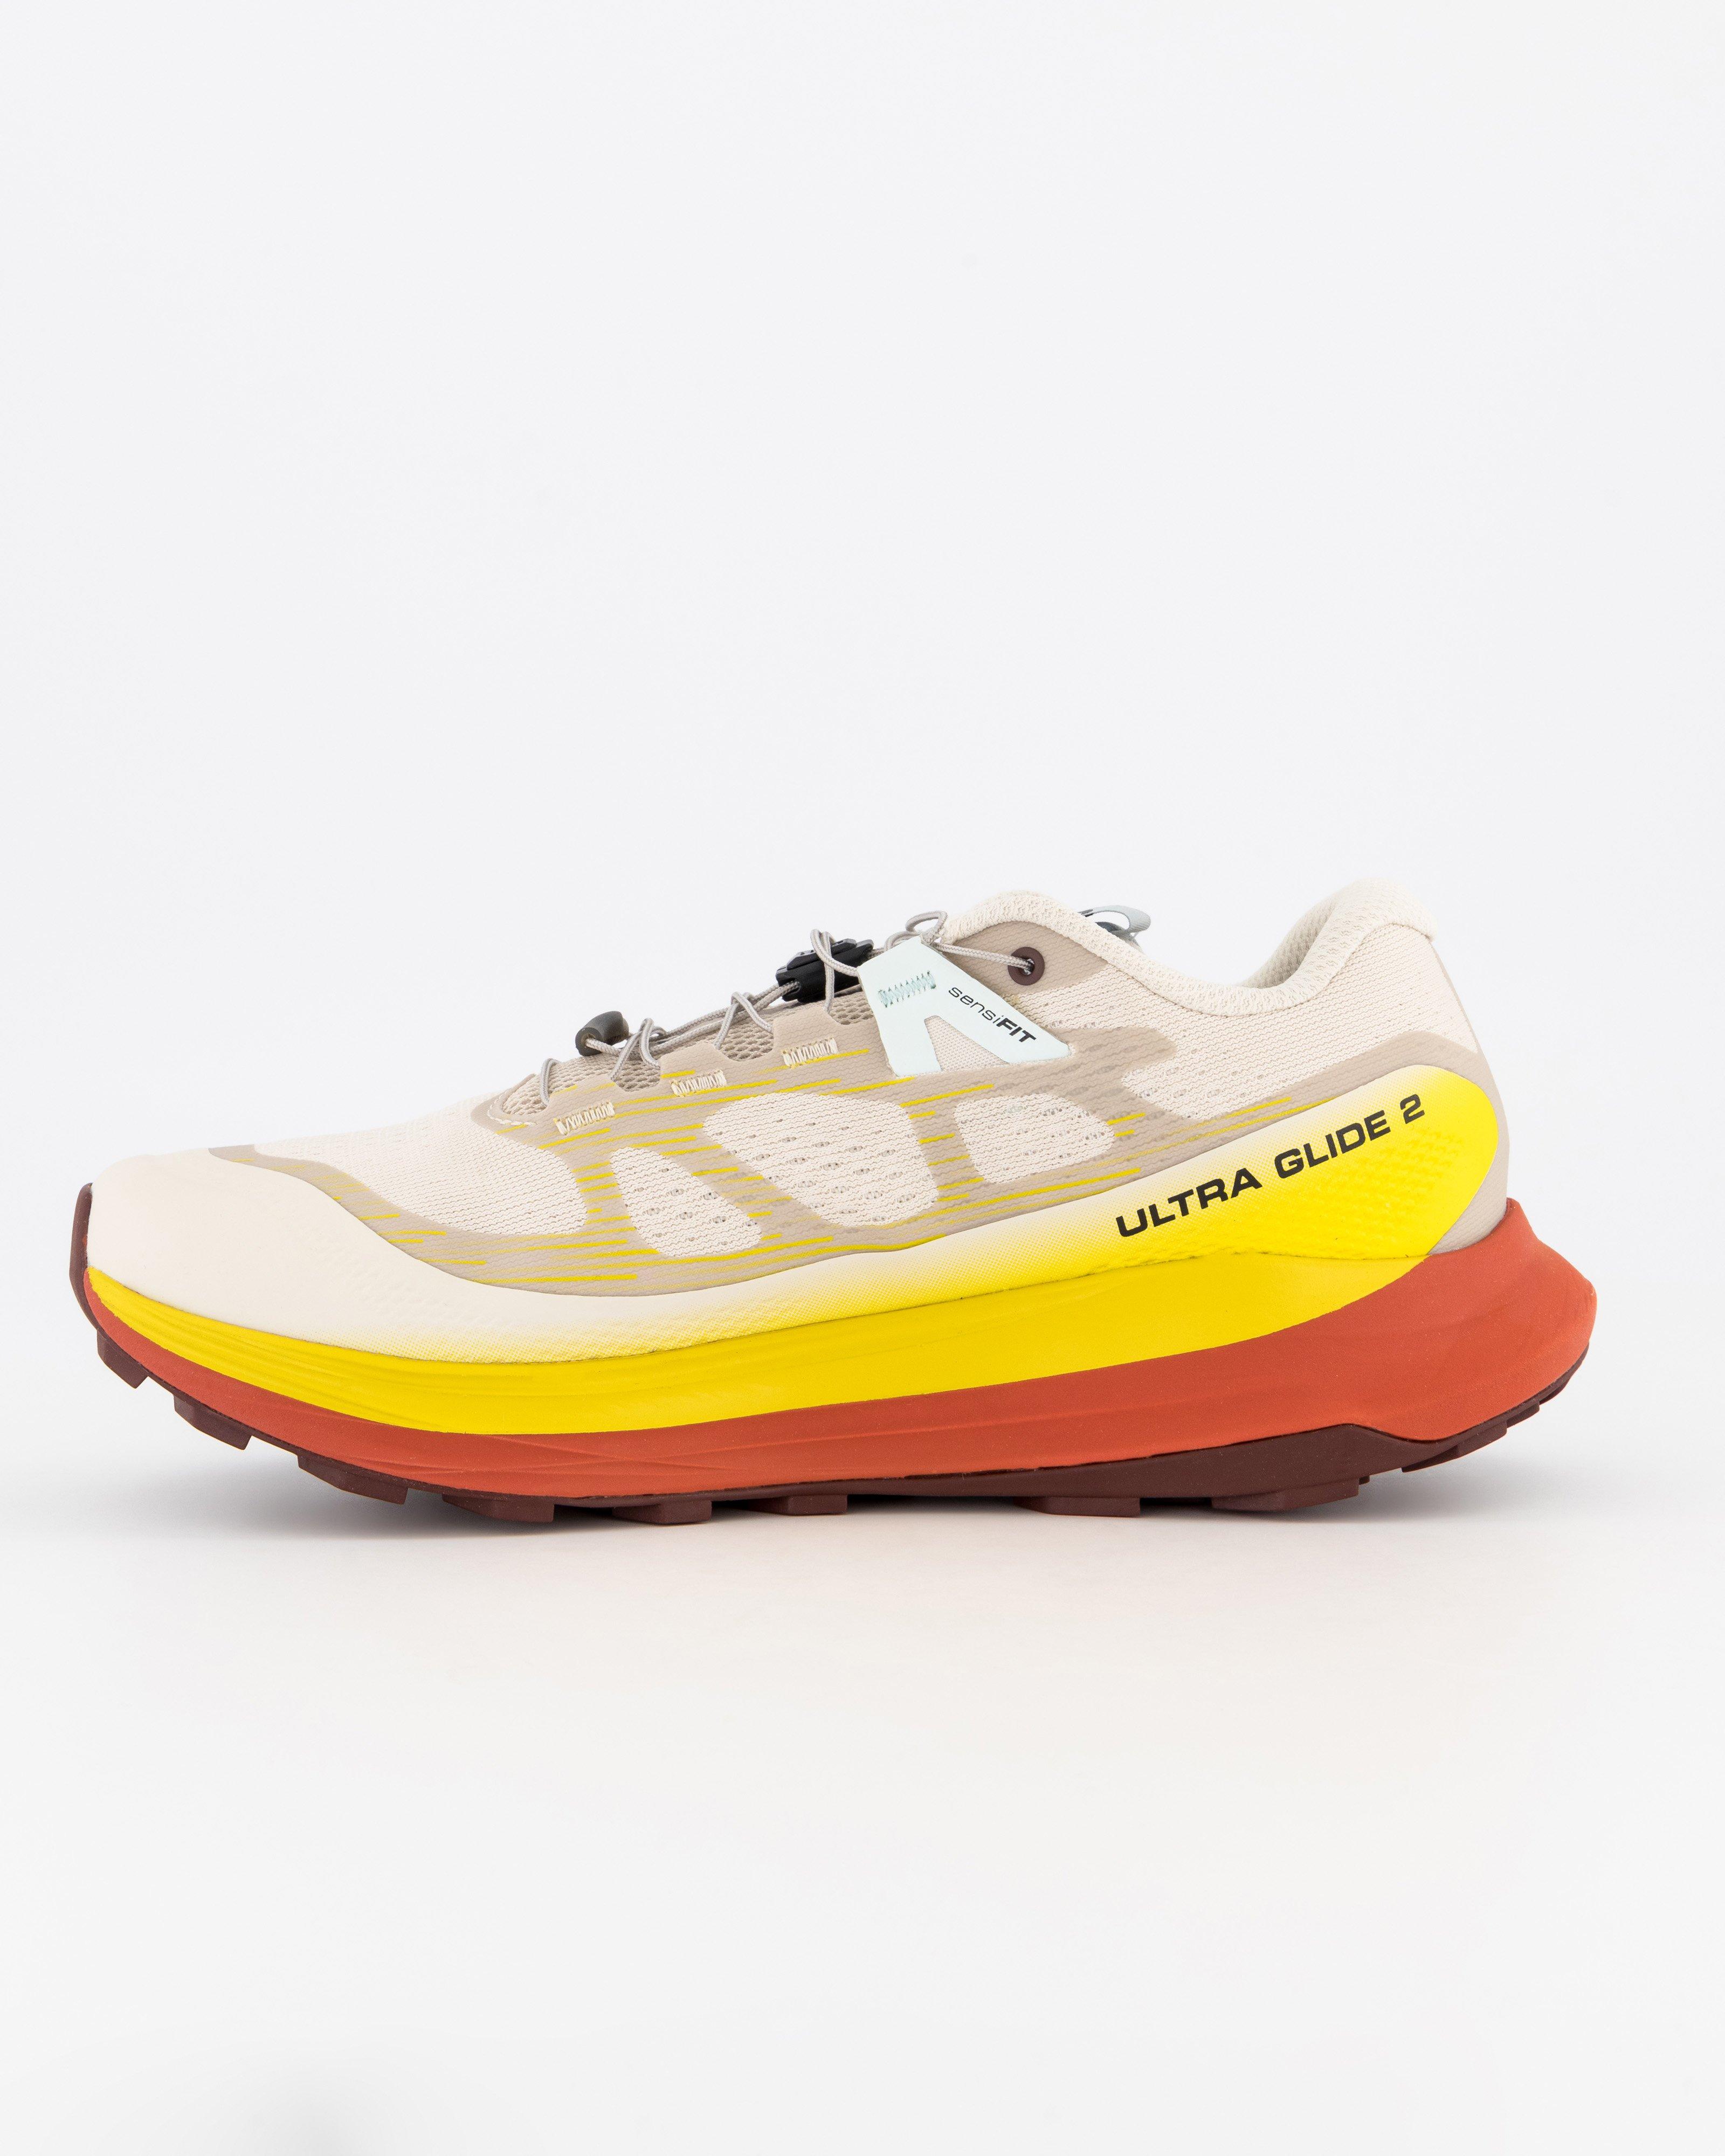 Salomon Men's Ultra Glide 2 Trail Running Shoes -  White